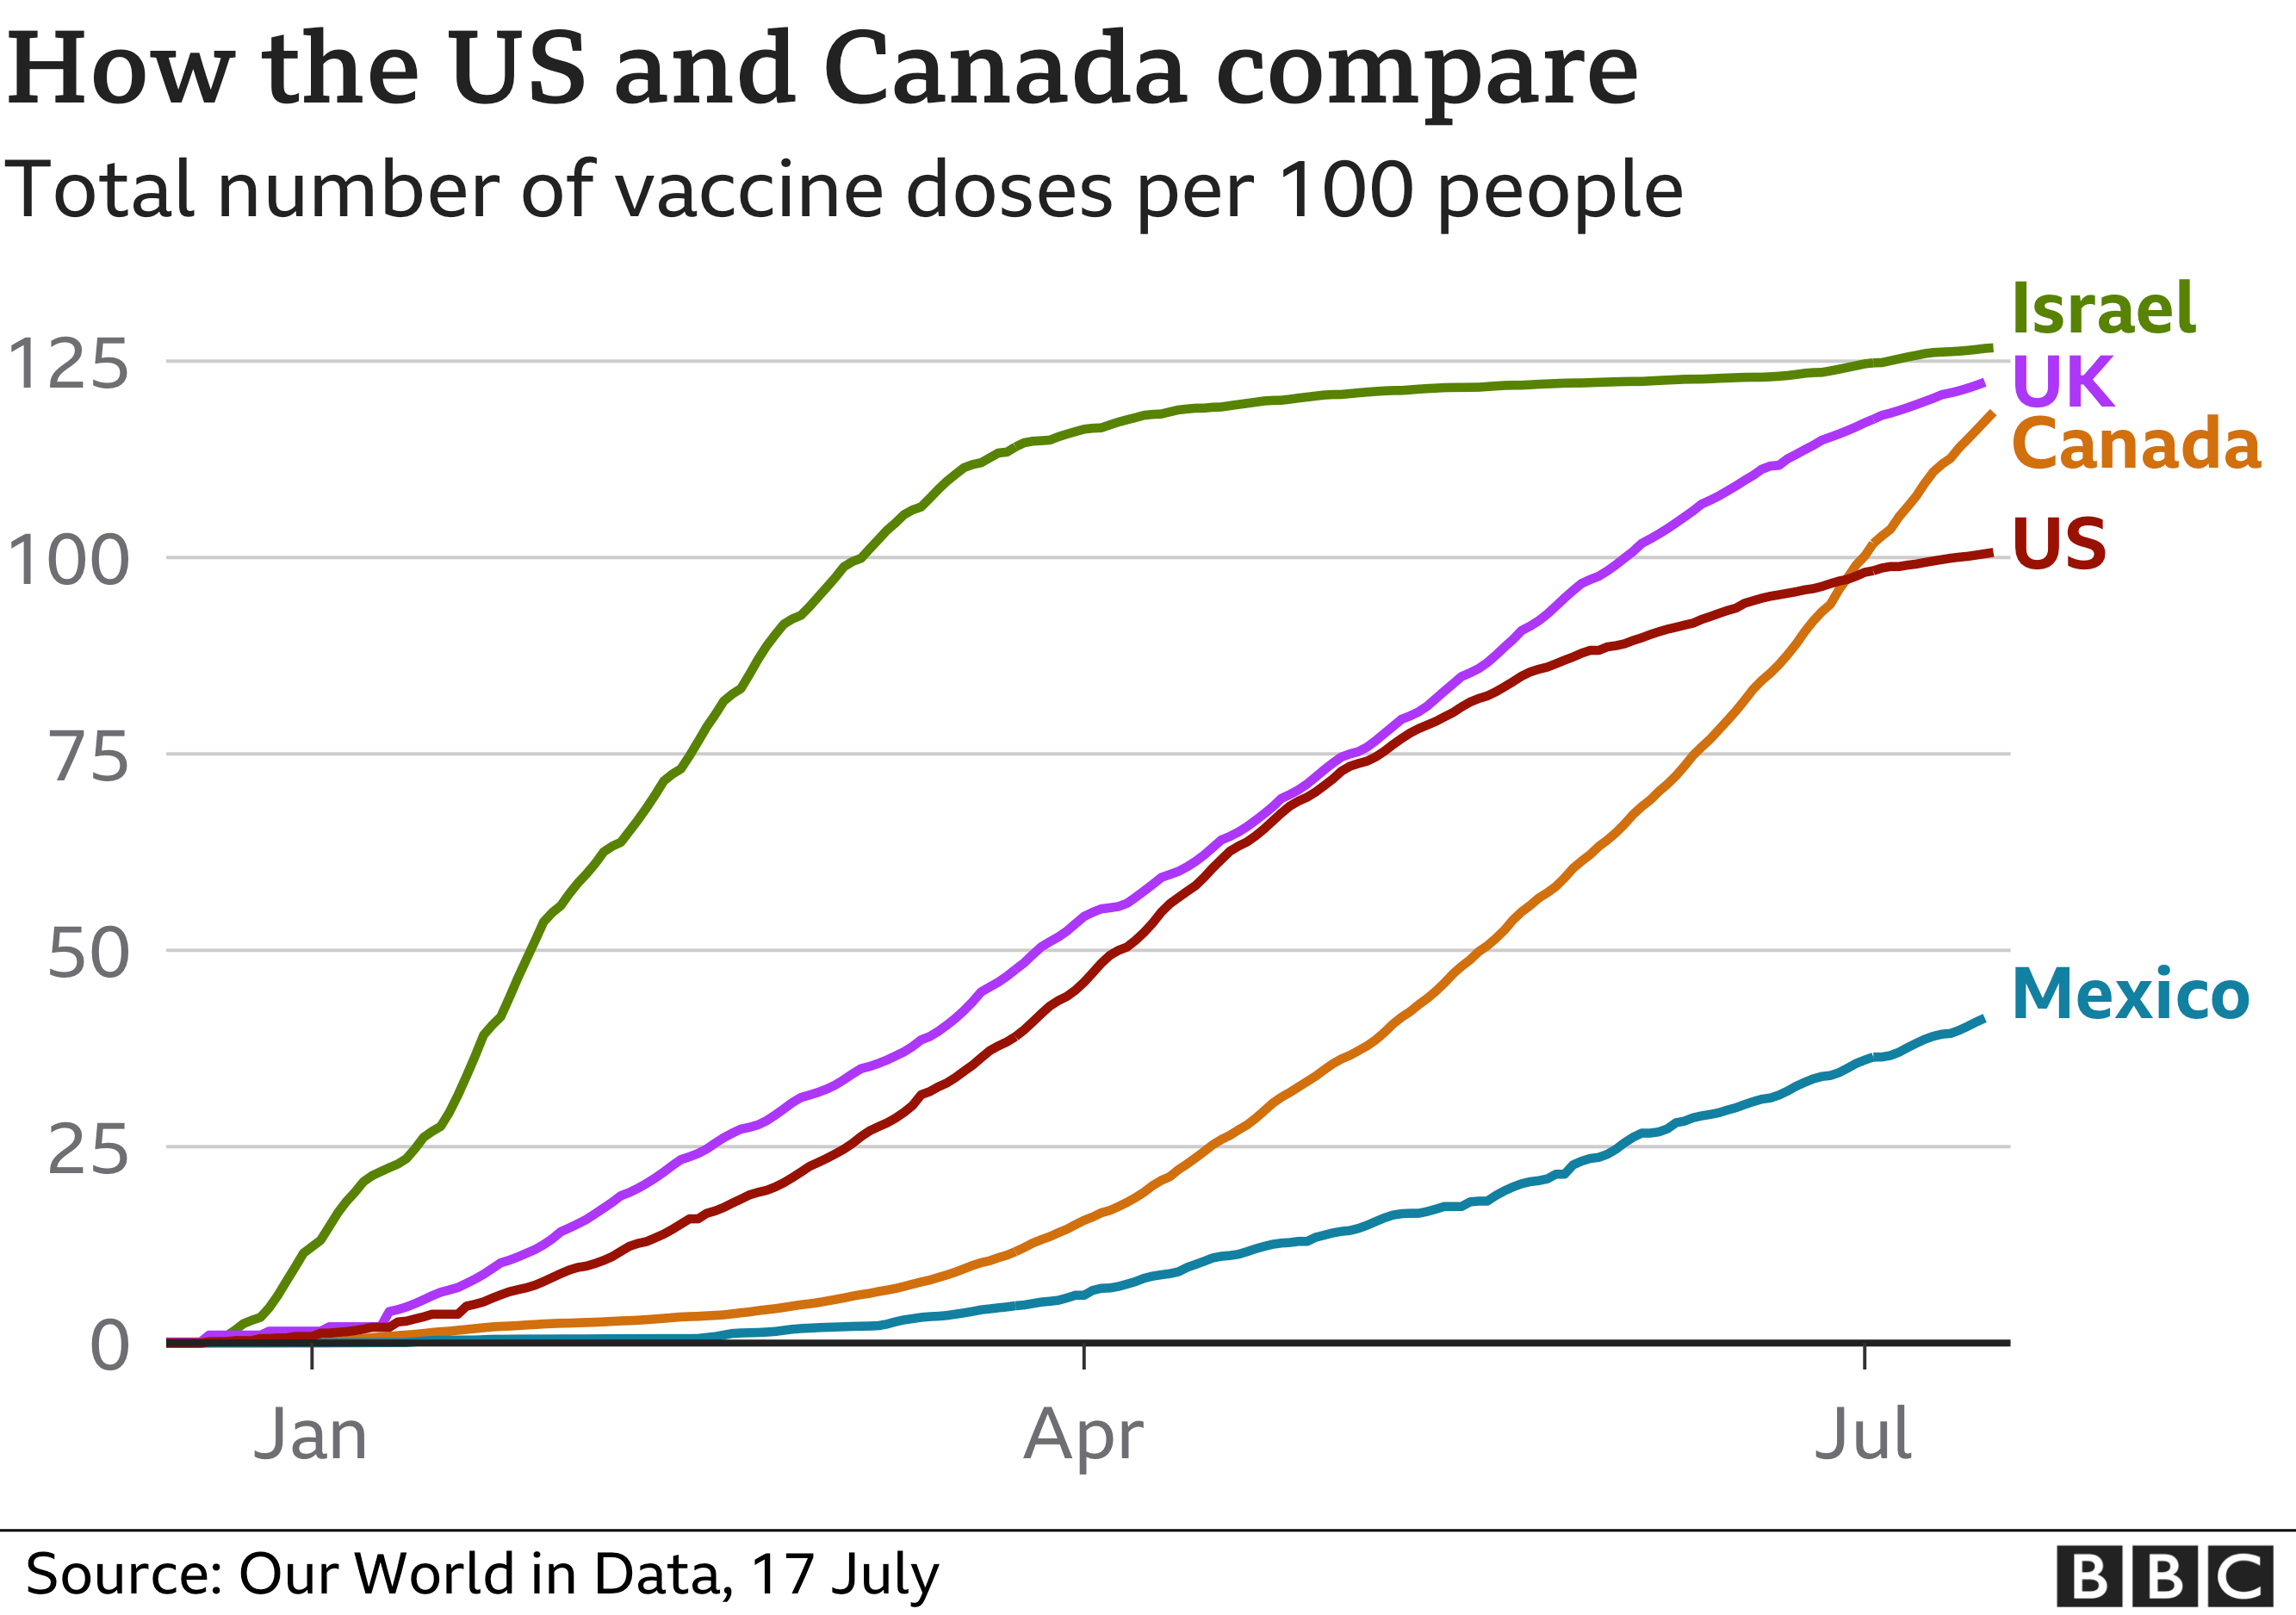 Los canadienses están mucho más motivados a vacunarse - Canadá alcanzará 55 millones de dosis de vacunas ✈️ Foro USA y Canada